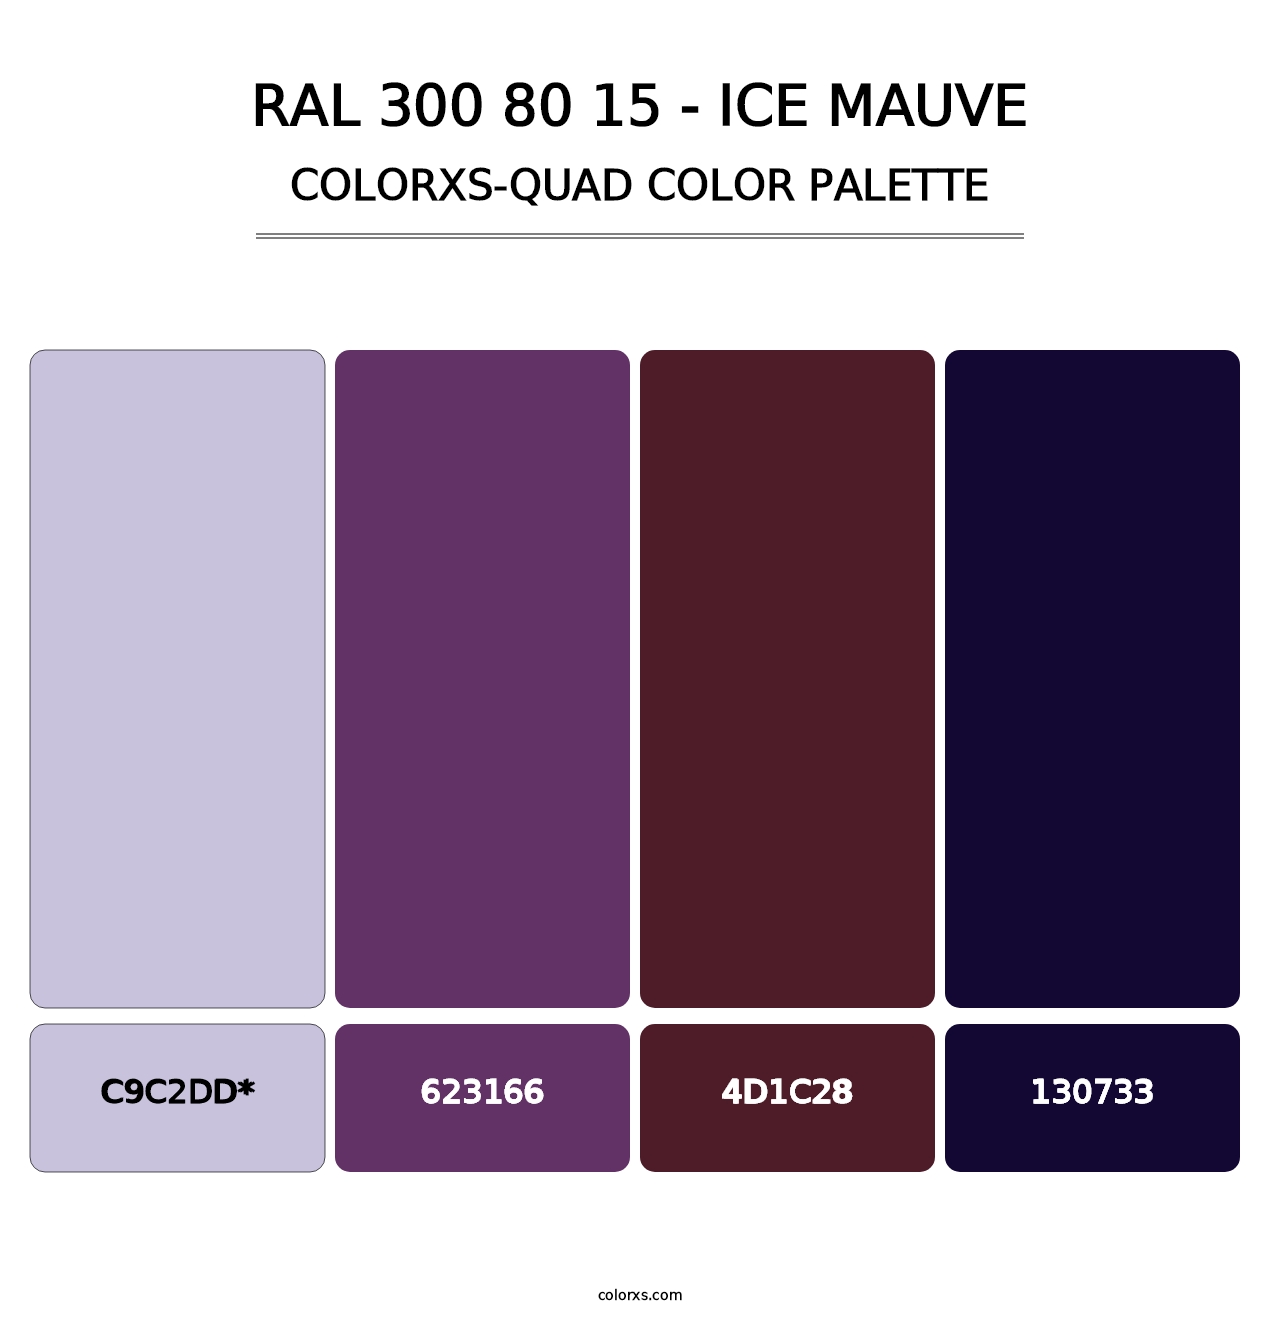 RAL 300 80 15 - Ice Mauve - Colorxs Quad Palette